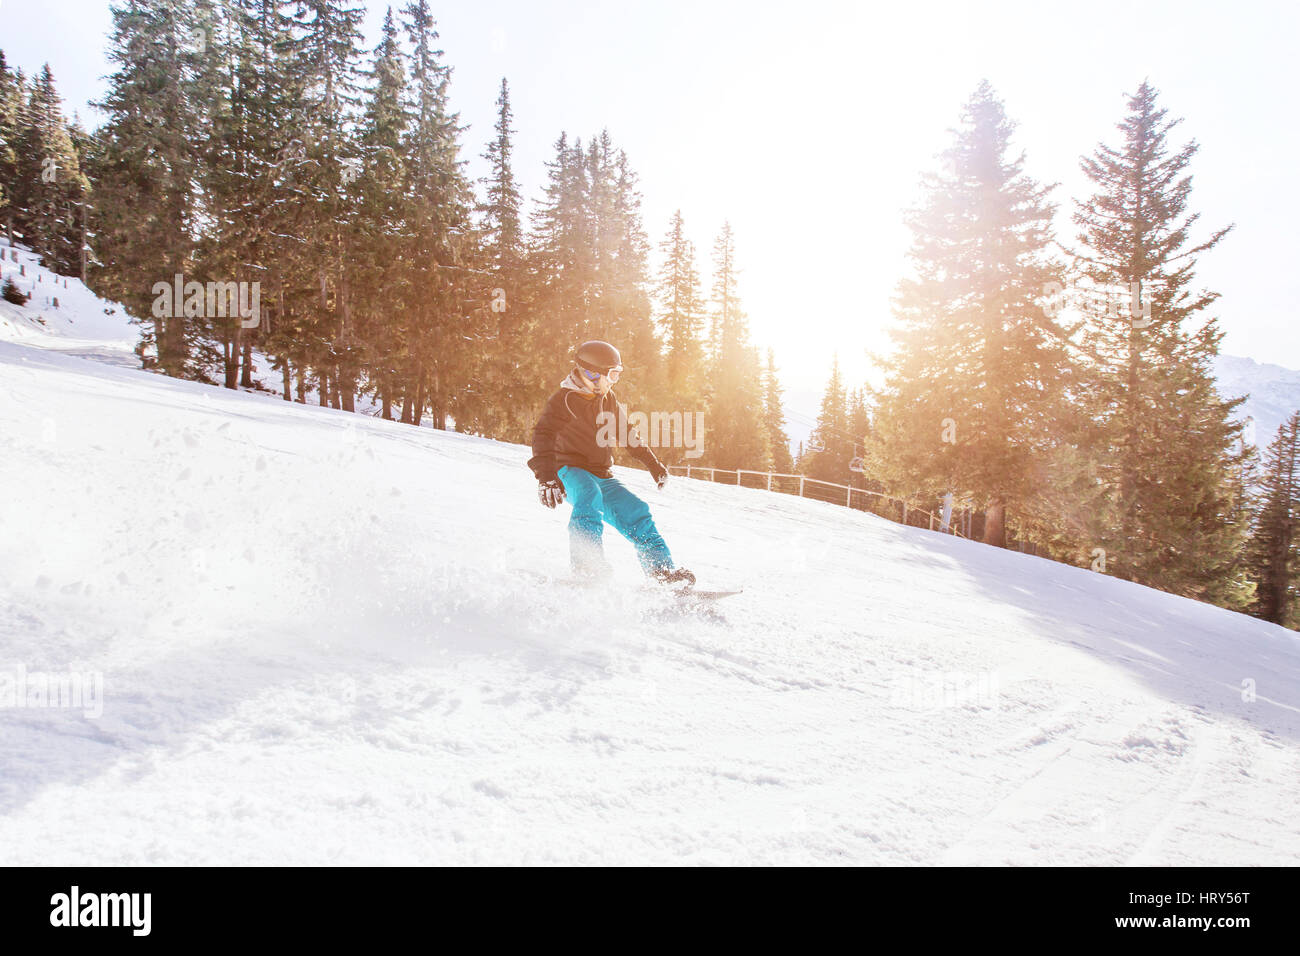 Snowboard in inverno alpi, uomo con velocità rapida su snowboard in pendenza di foresta con retroilluminazione Foto Stock